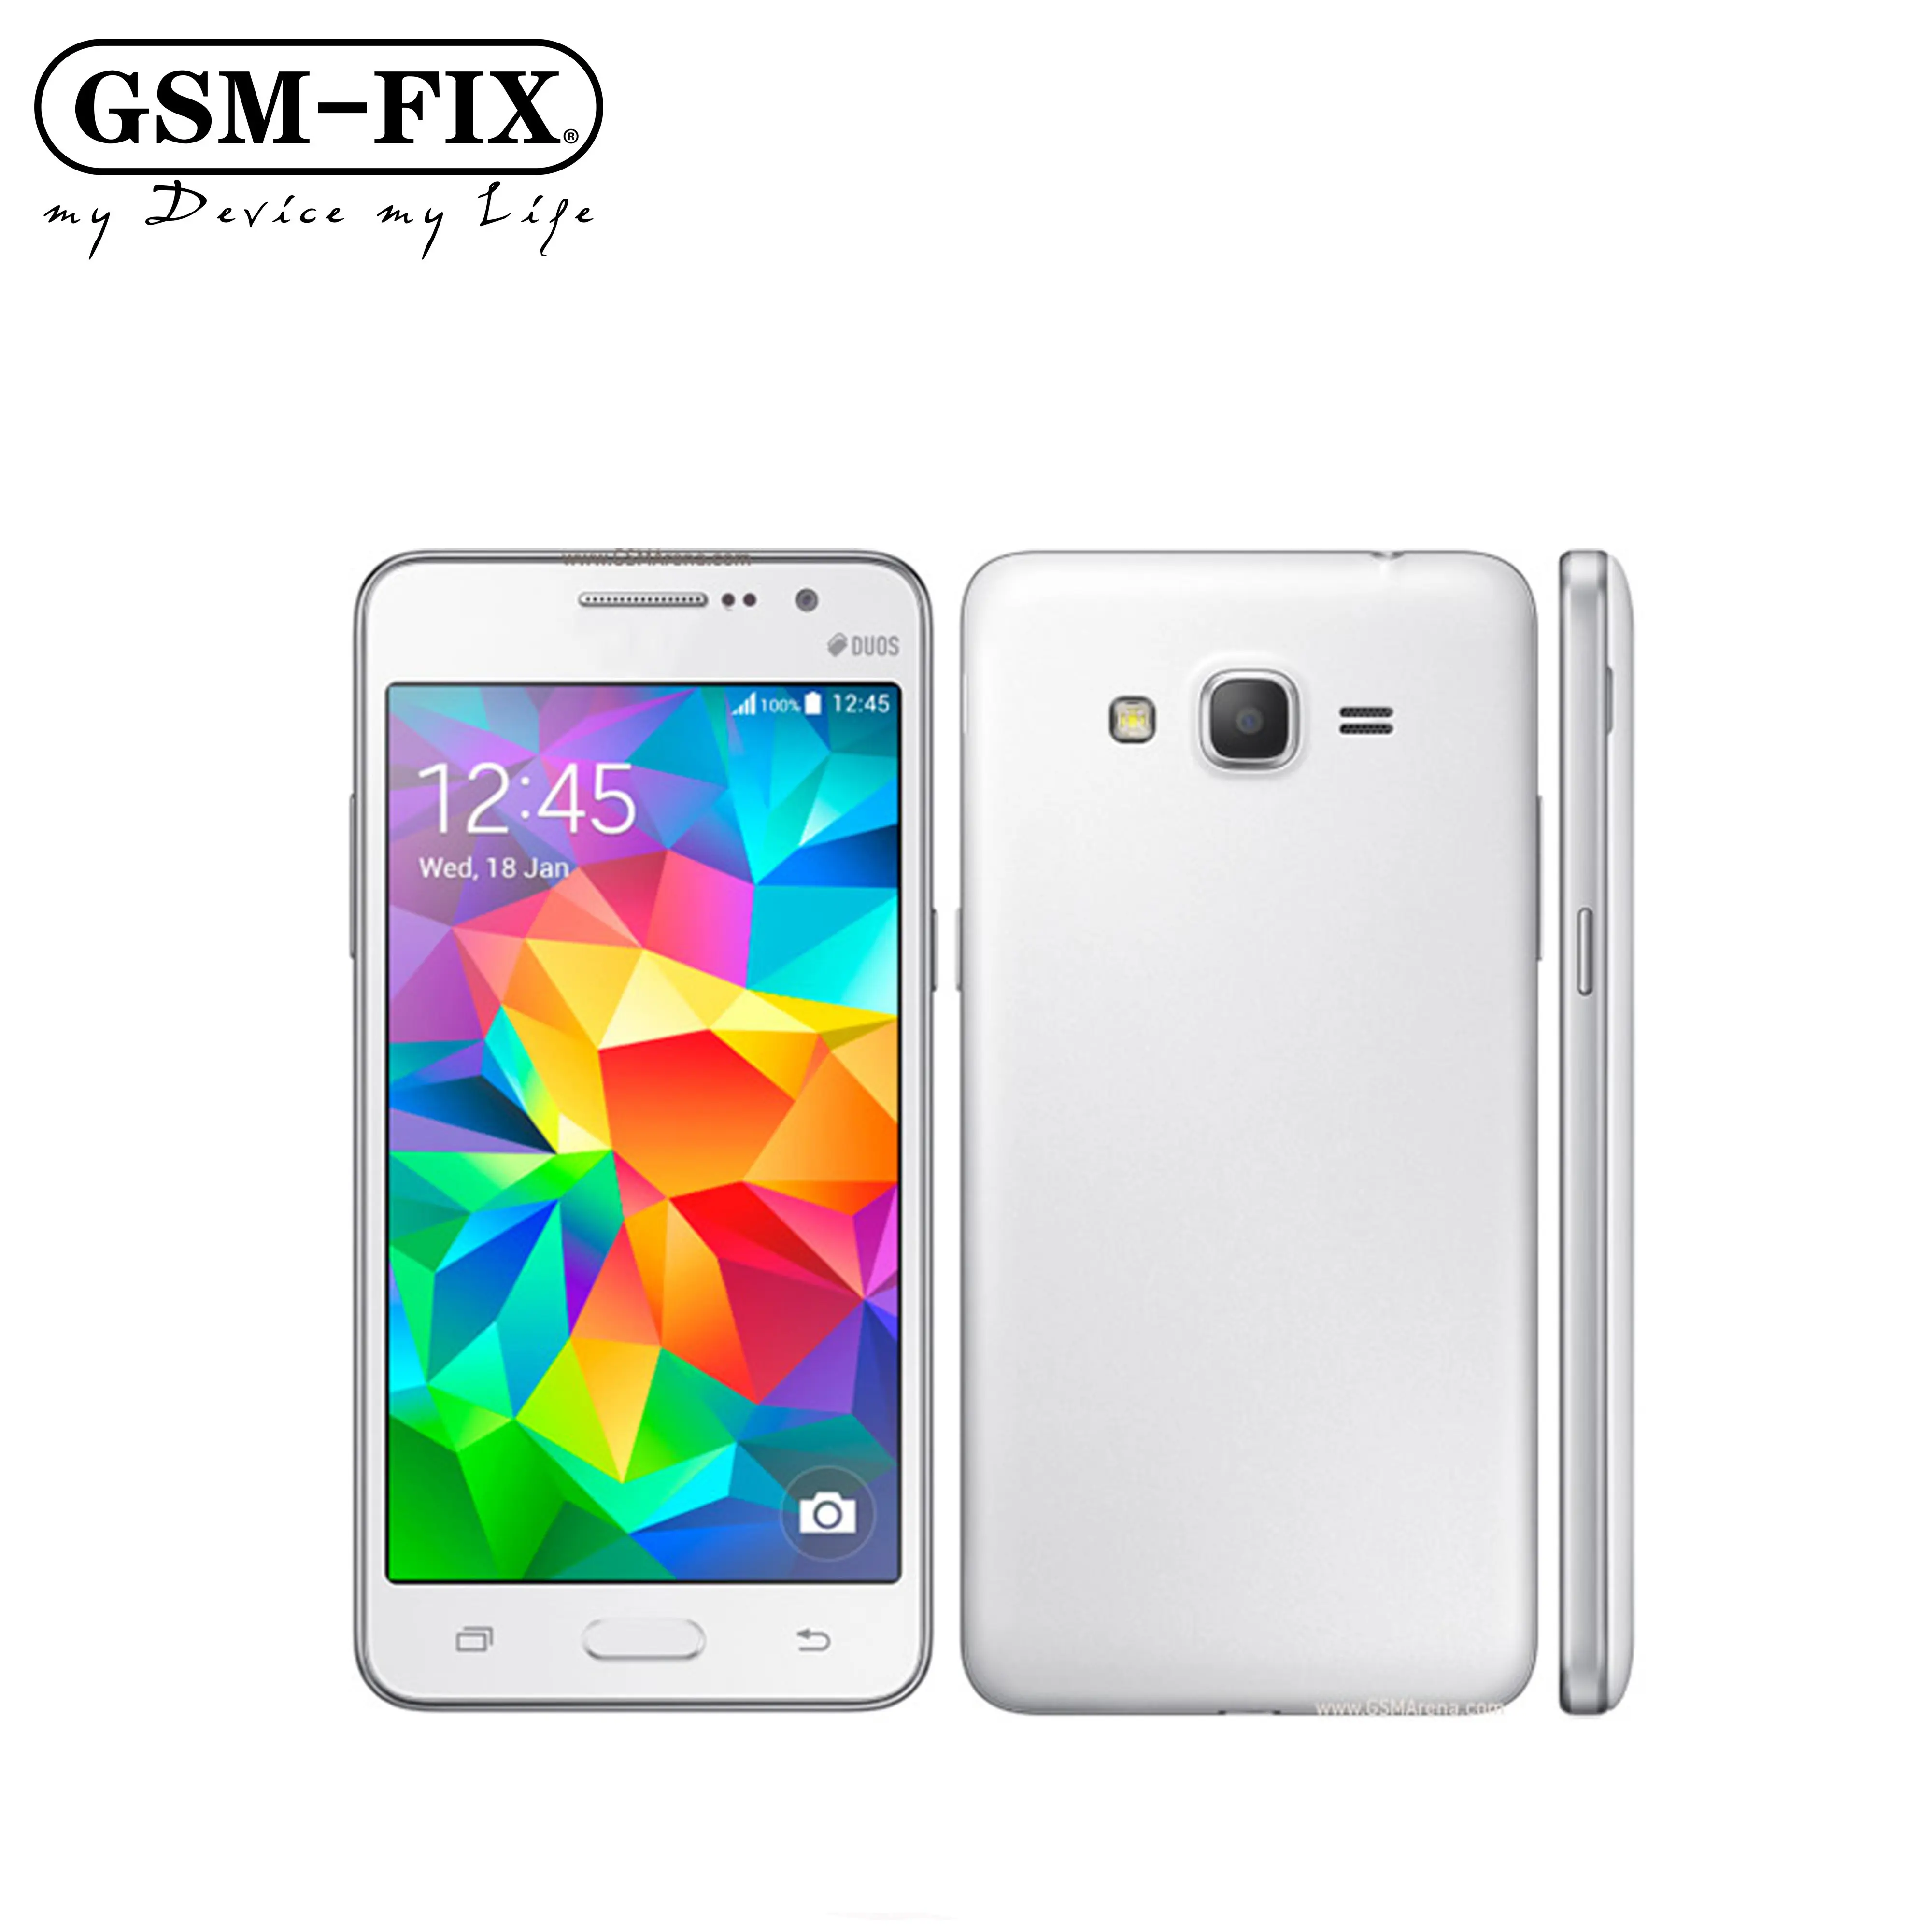 โทรศัพท์มือถือ Samsung Galaxy Grand Prime GSM-FIX G530,ของแท้ปลดล็อคแล้วใช้สองซิม1GB RAM G530H นิ้วหน้าจอสัมผัส5.0